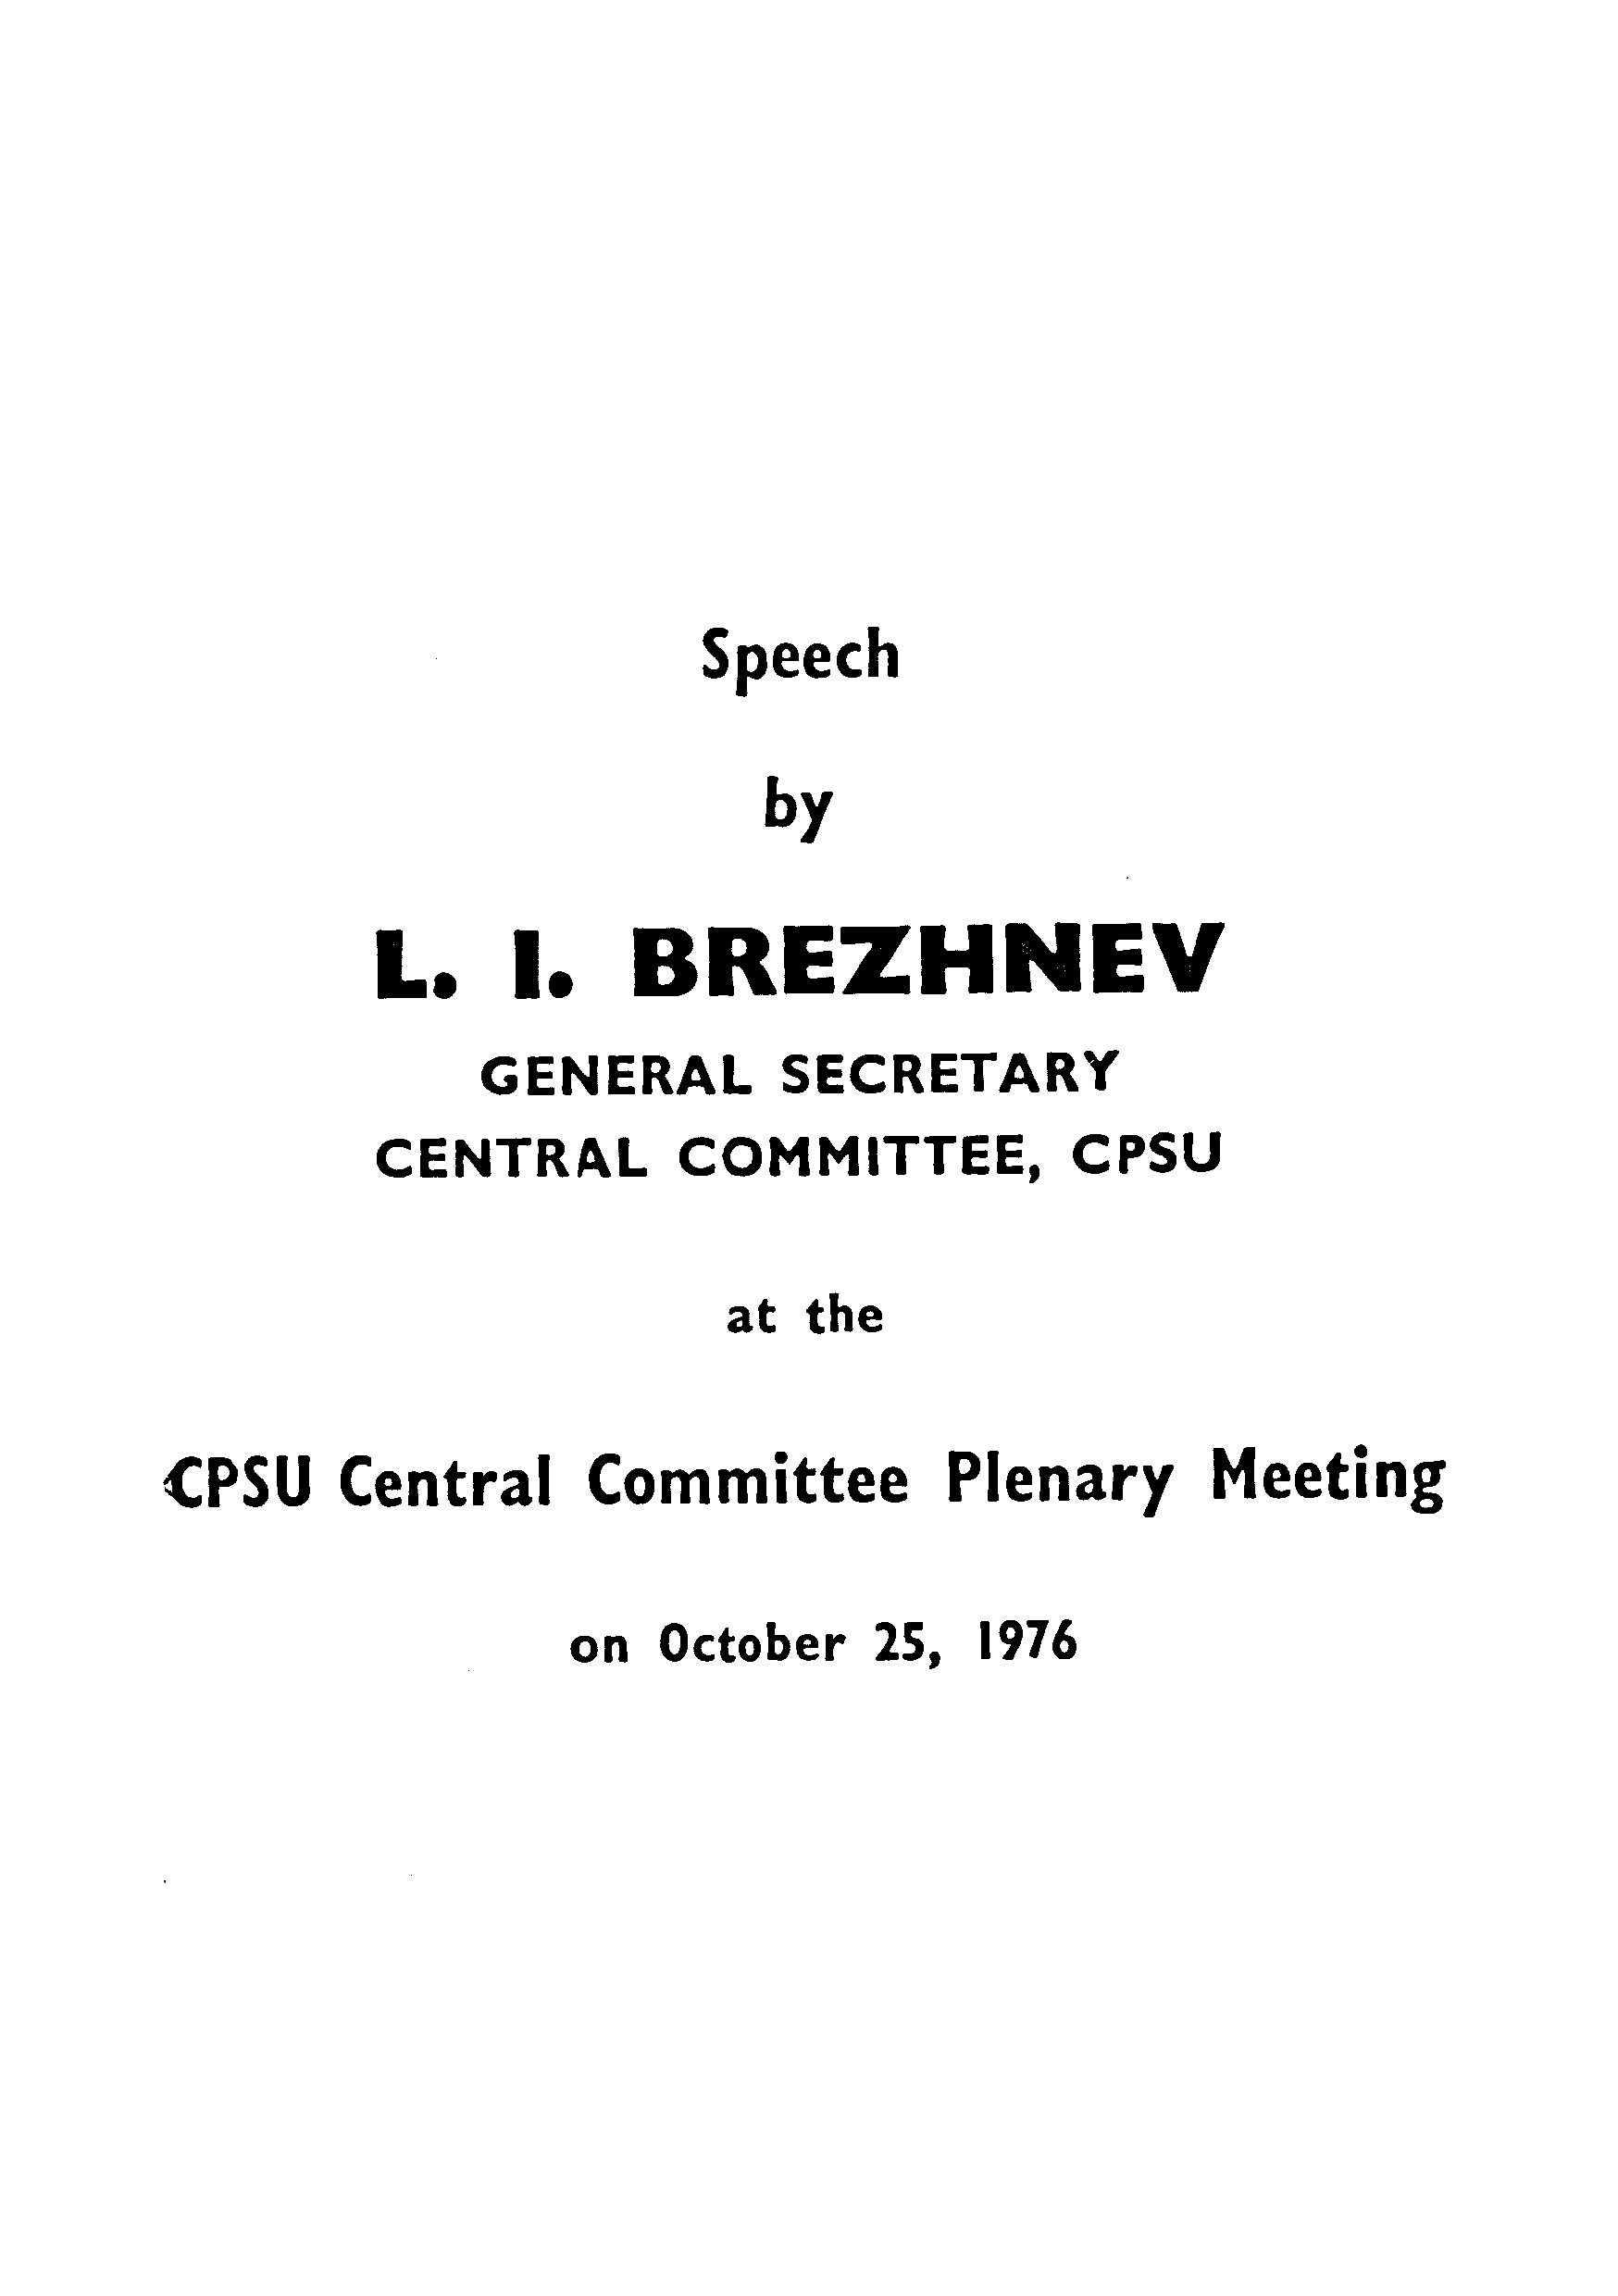 Speech by L.I.BREZHNEV GENERAL SECRETARY